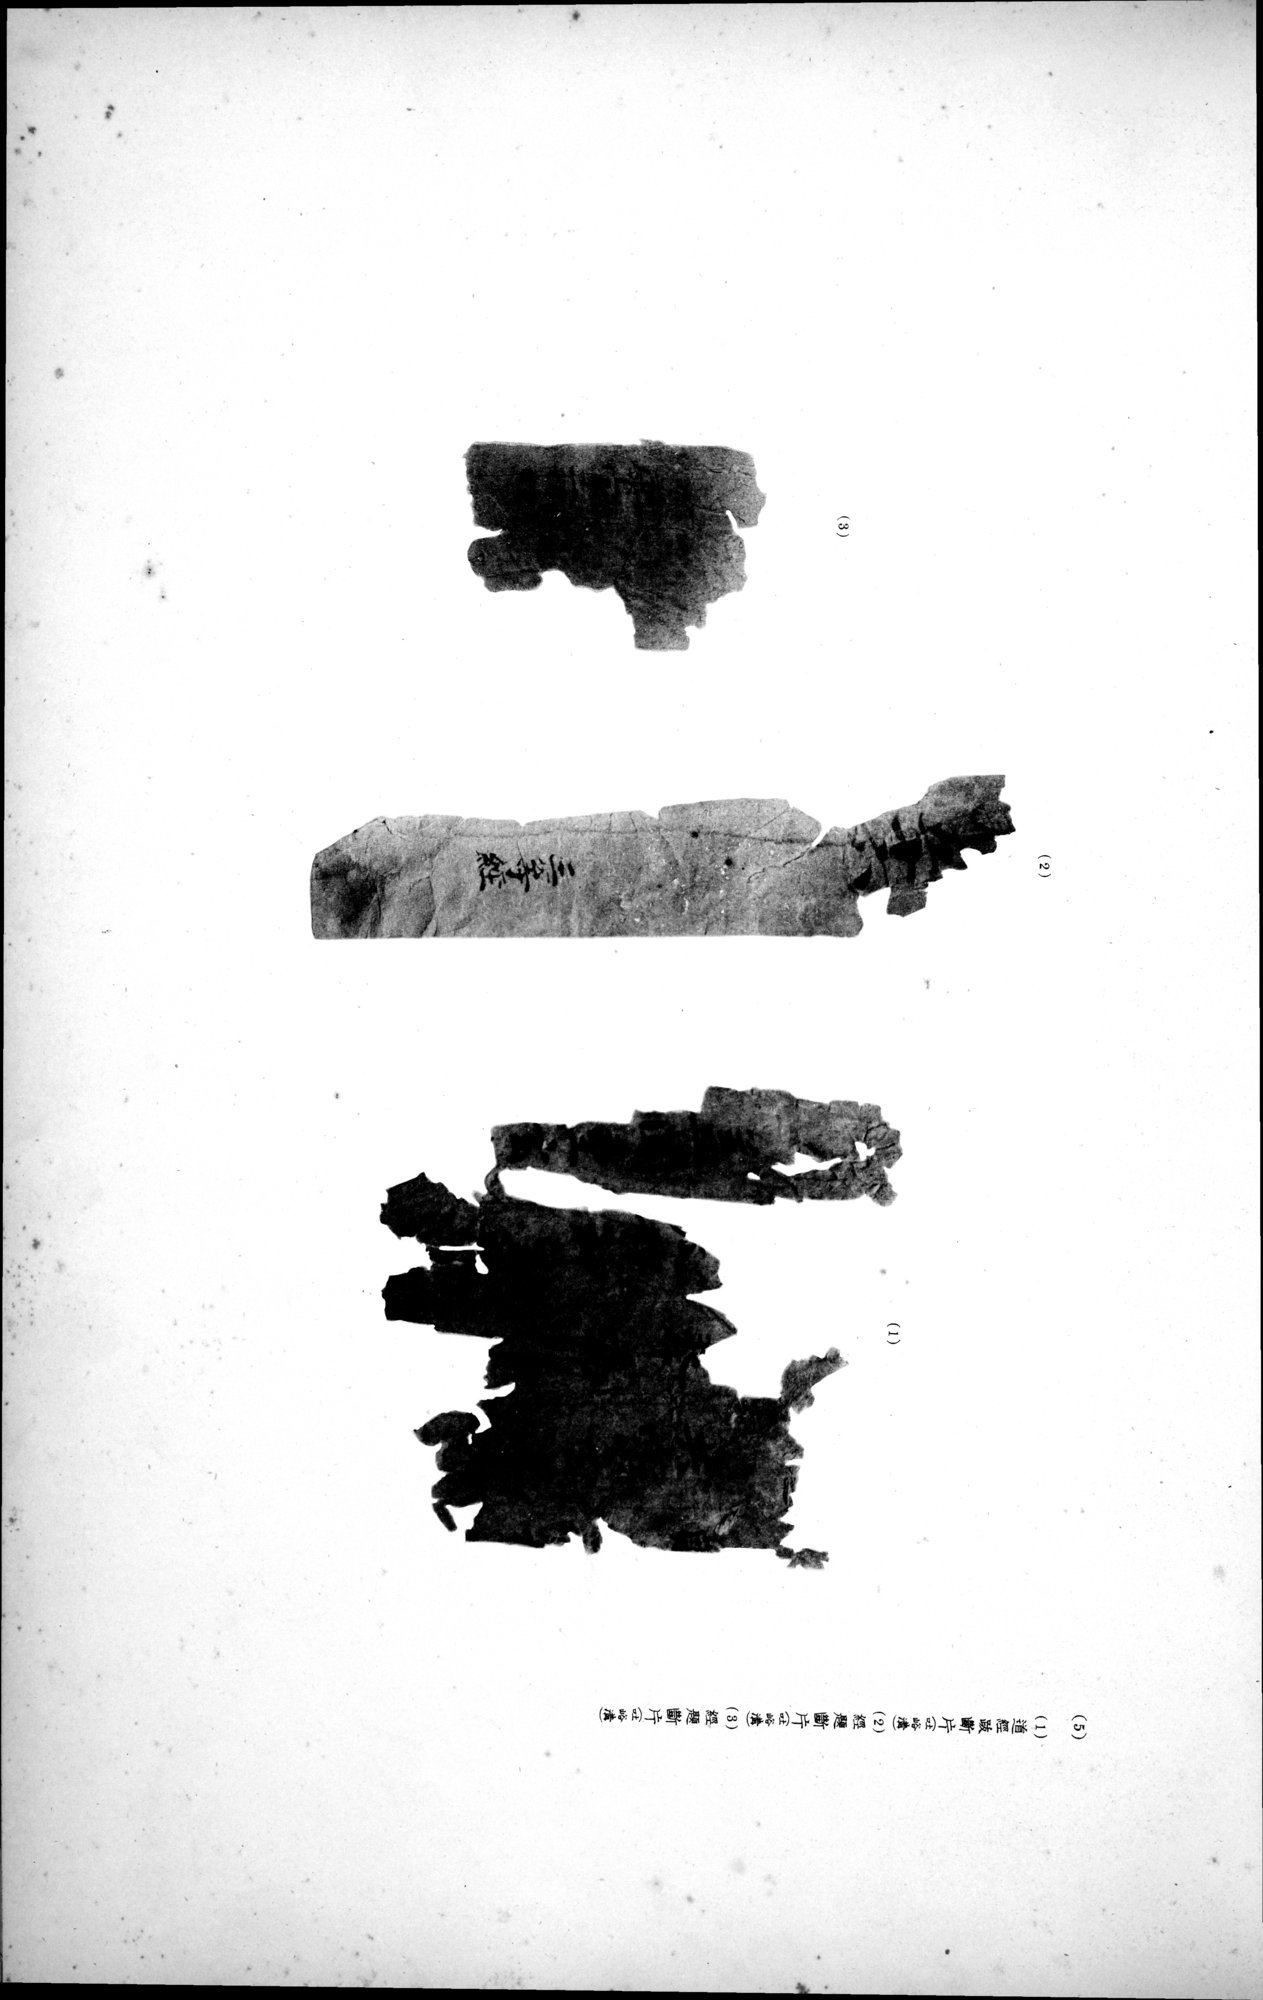 西域考古図譜 : vol.2 / Page 163 (Grayscale High Resolution Image)